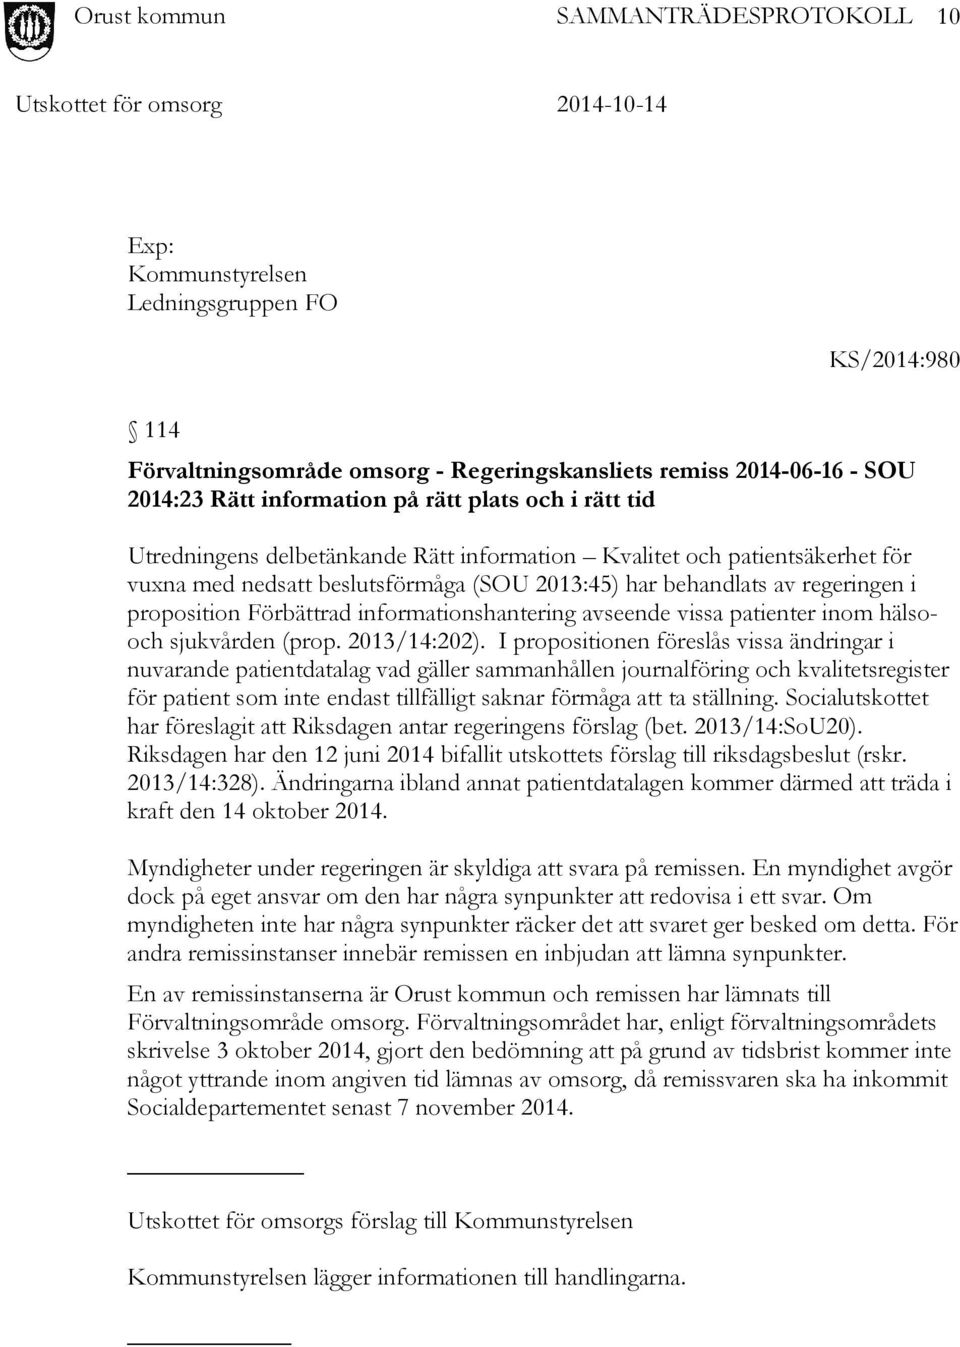 hälsooch sjukvården (prop. 2013/14:202).